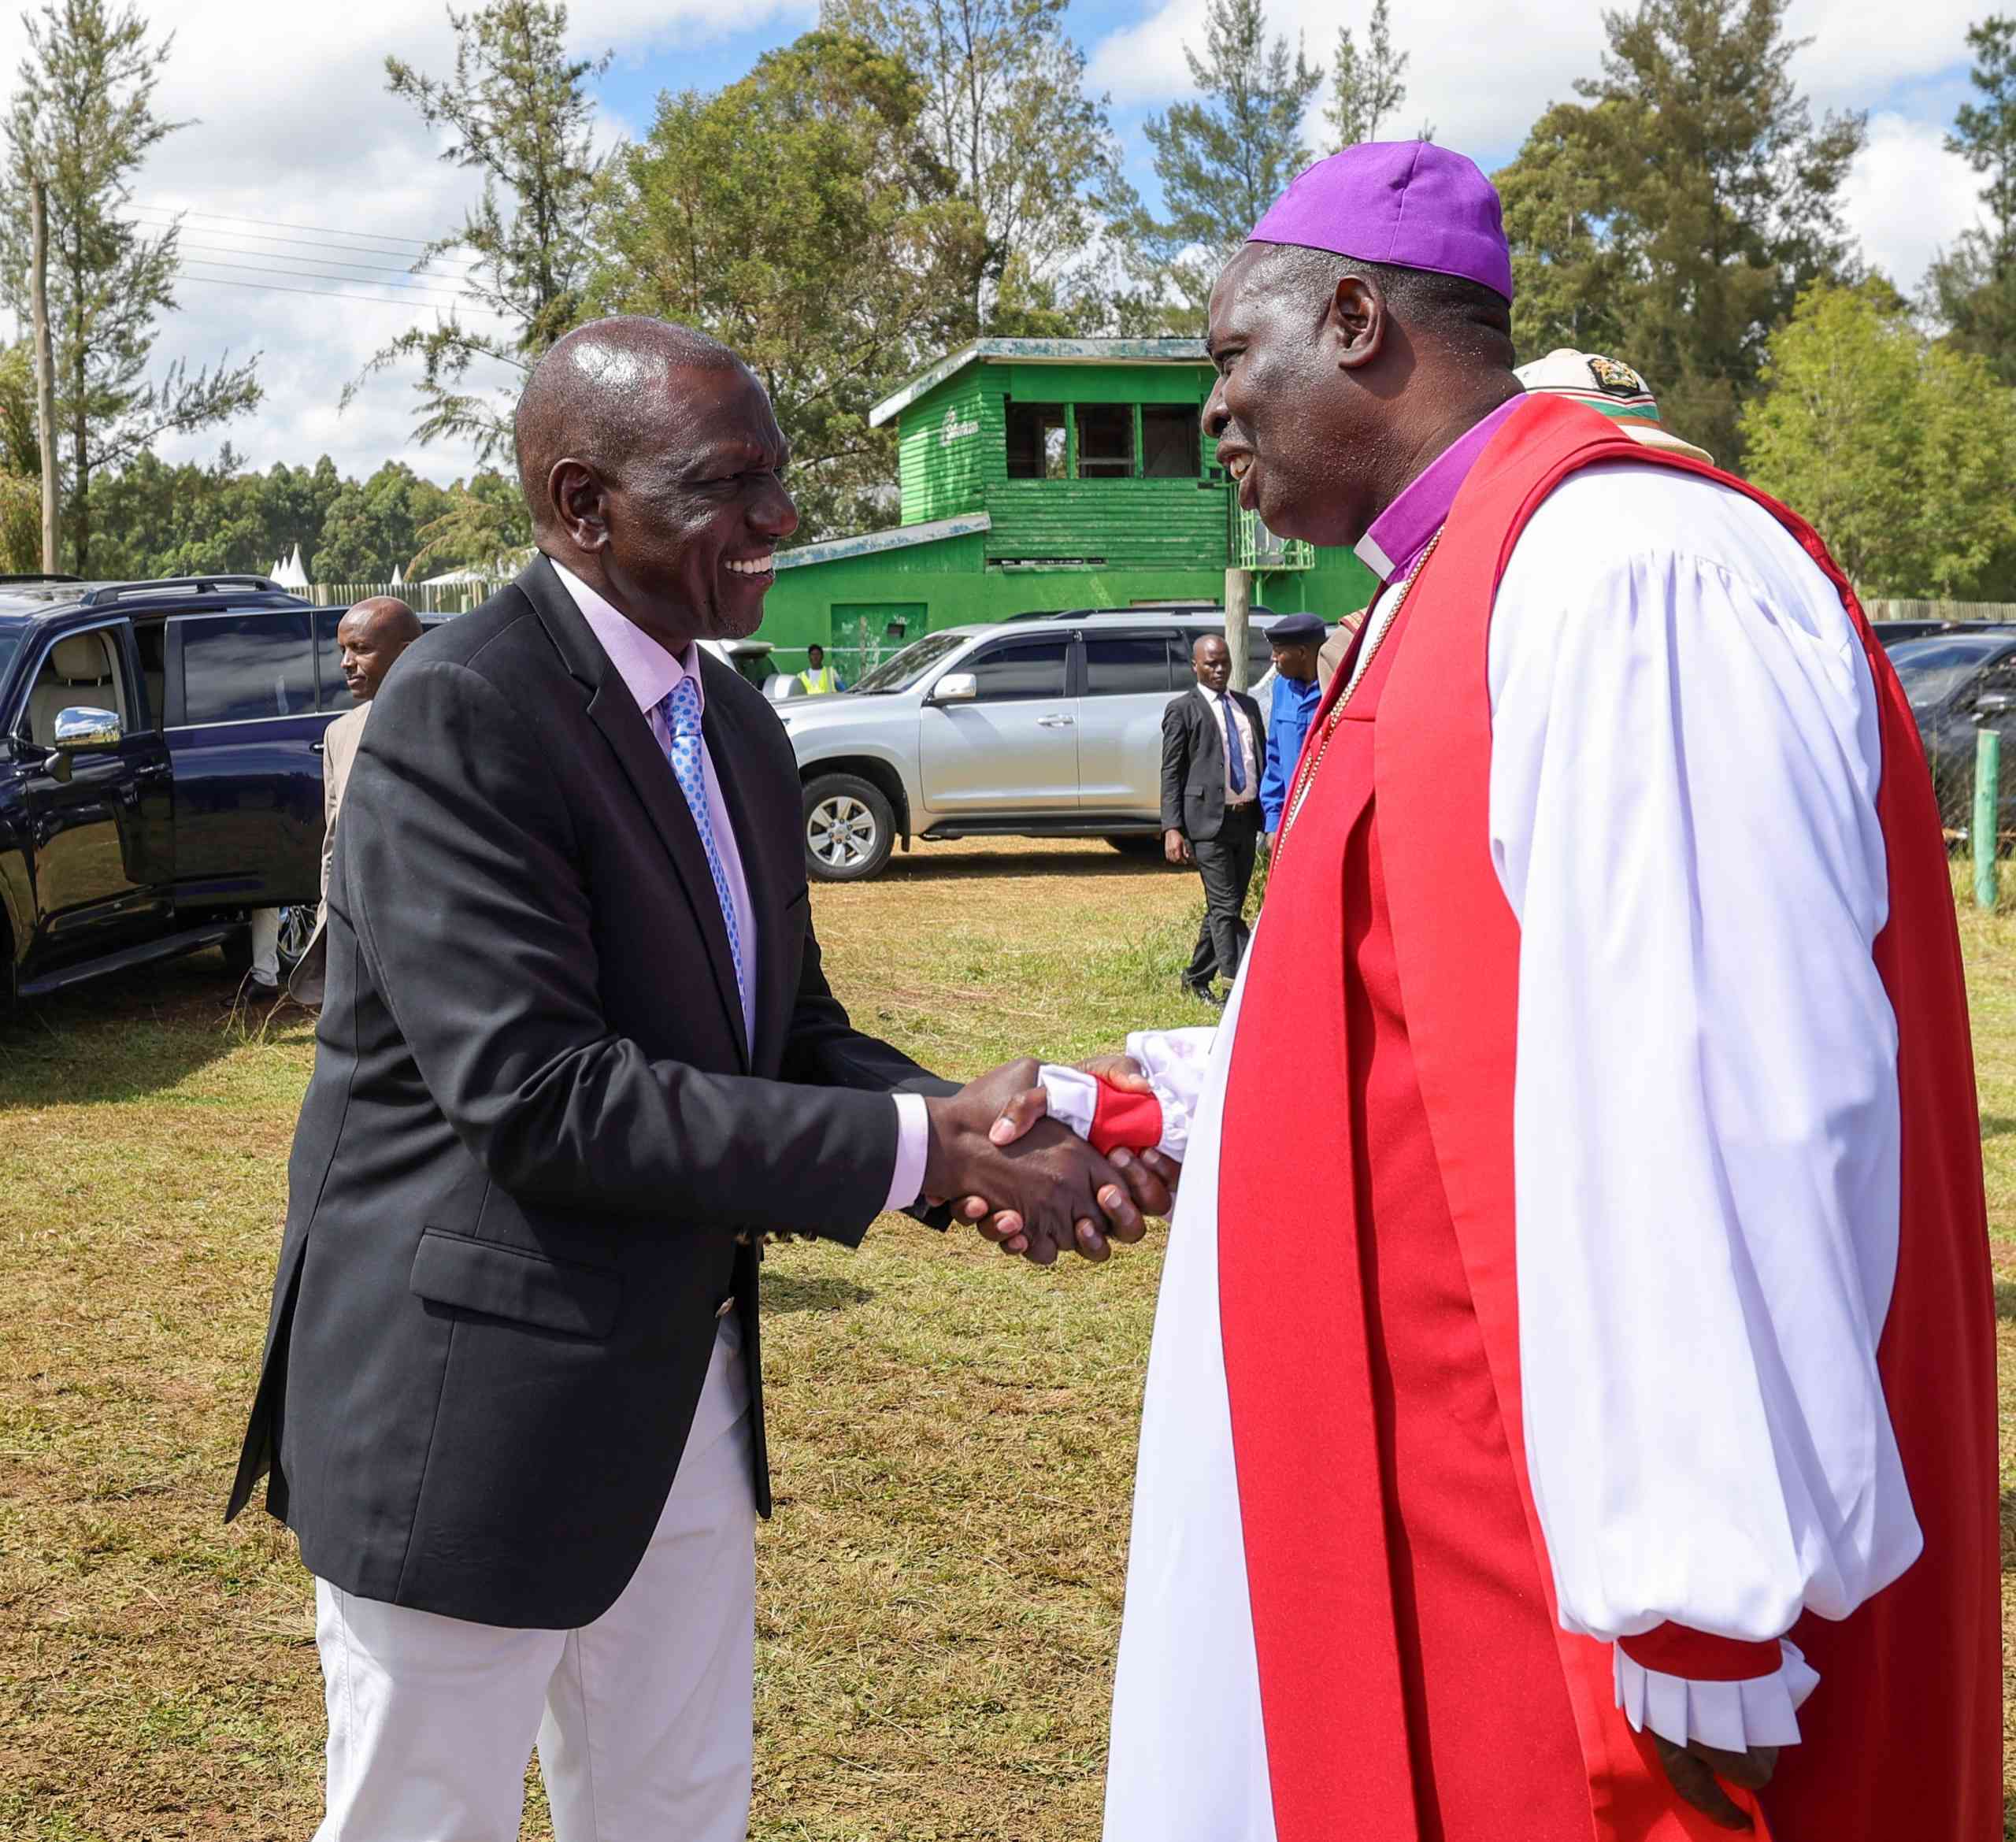 El presidente Ruto resta importancia a las críticas a sus viajes al extranjero y revela más planes de viaje